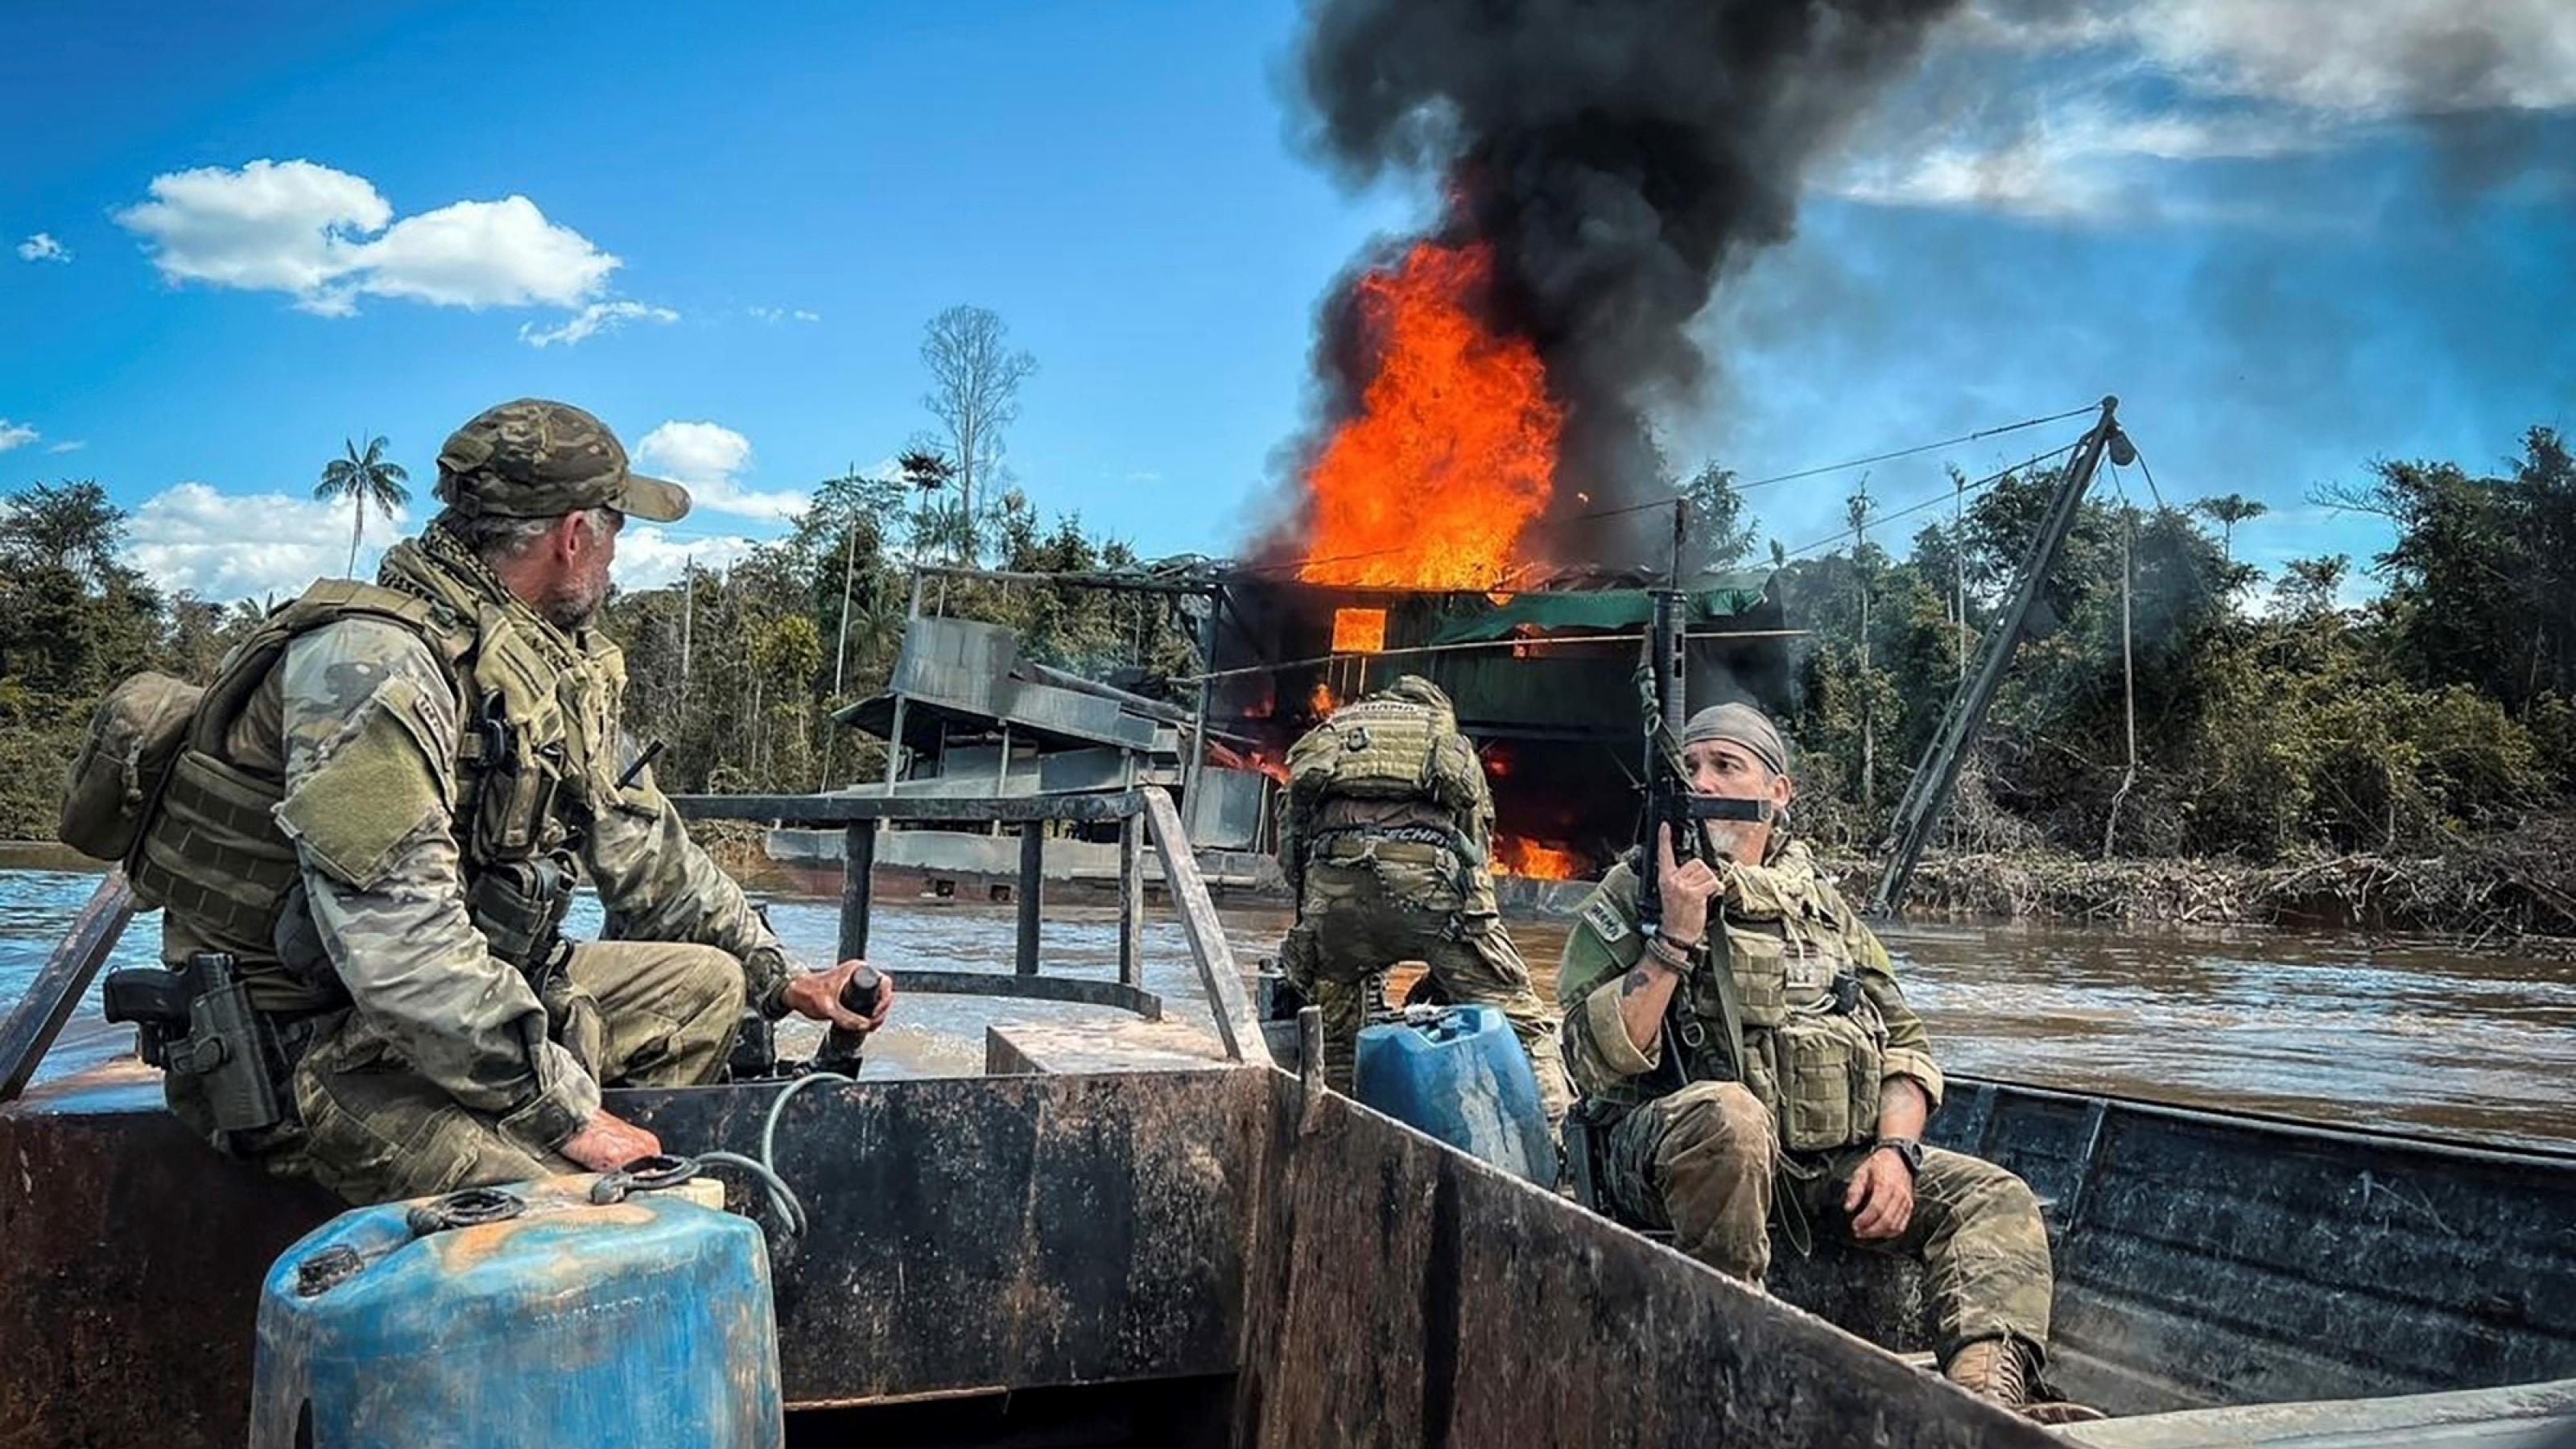 Drei schwer bewaffnete Männer in militärischer Camuflage-Kleidung blicken von ihrem Boot aus auf einen brennenden Bergbaukahn im Hintergrund